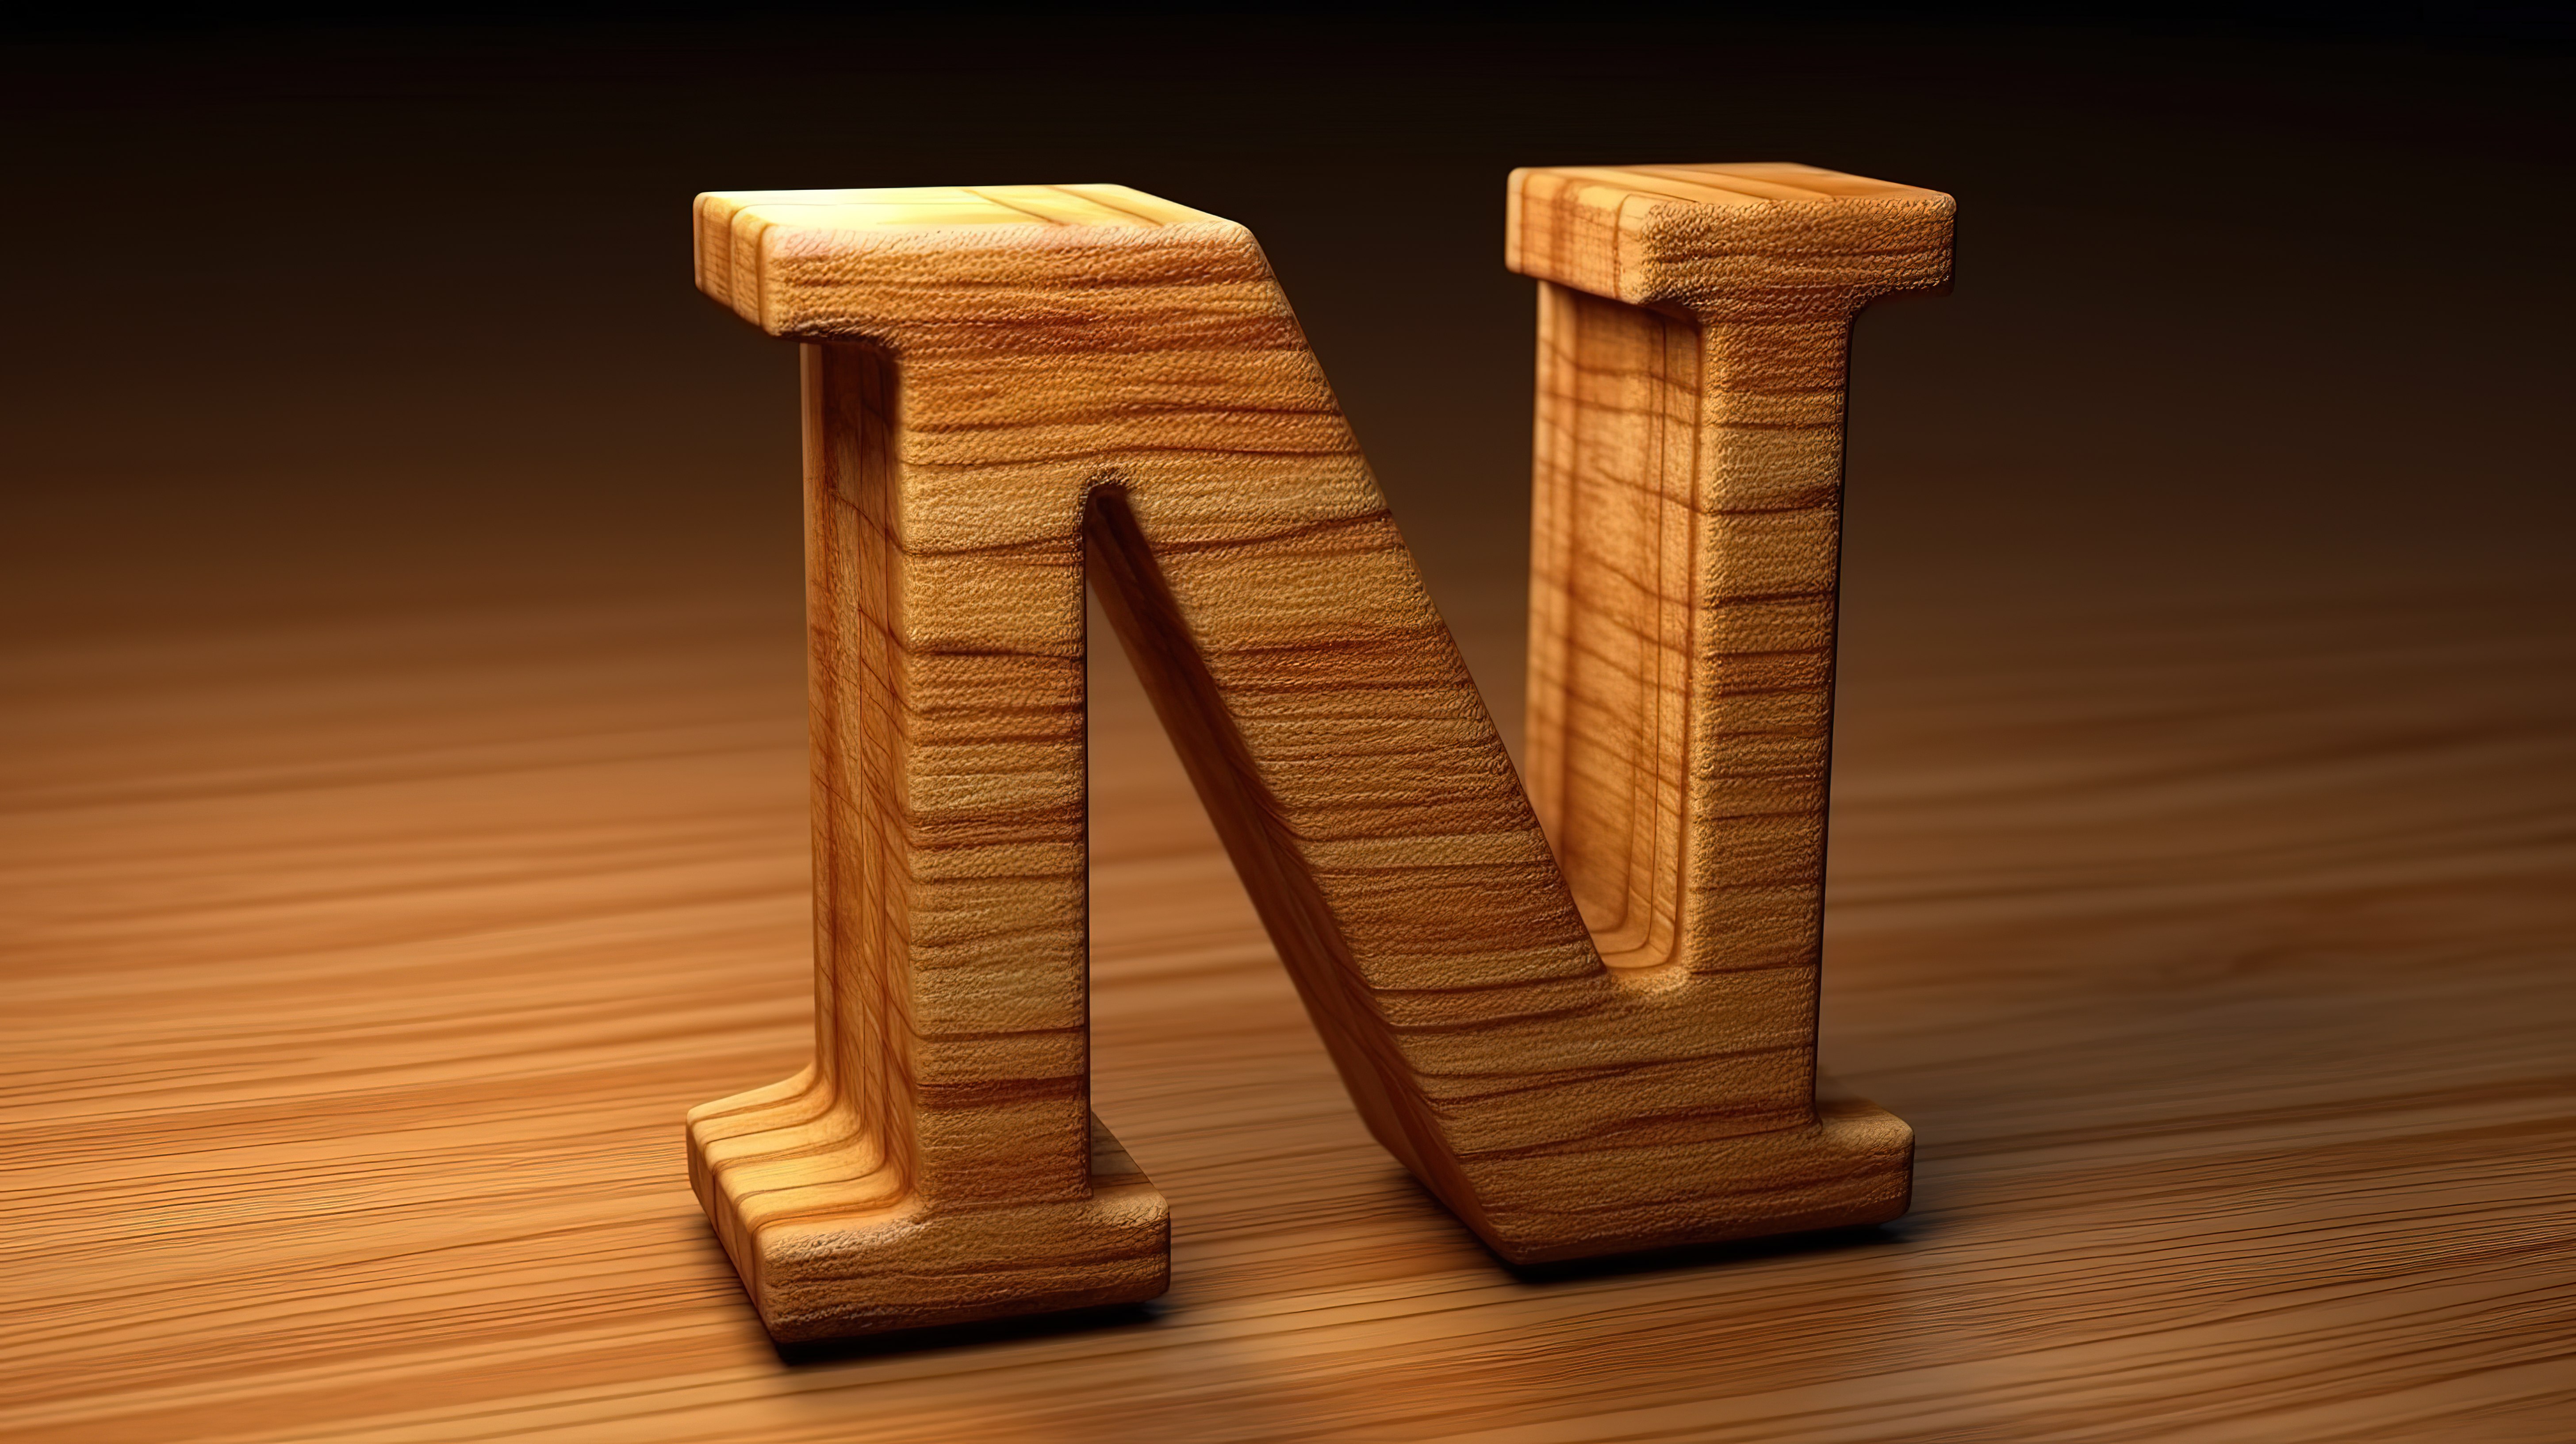 字母 m 的倾斜木质 3d 字体渲染图片